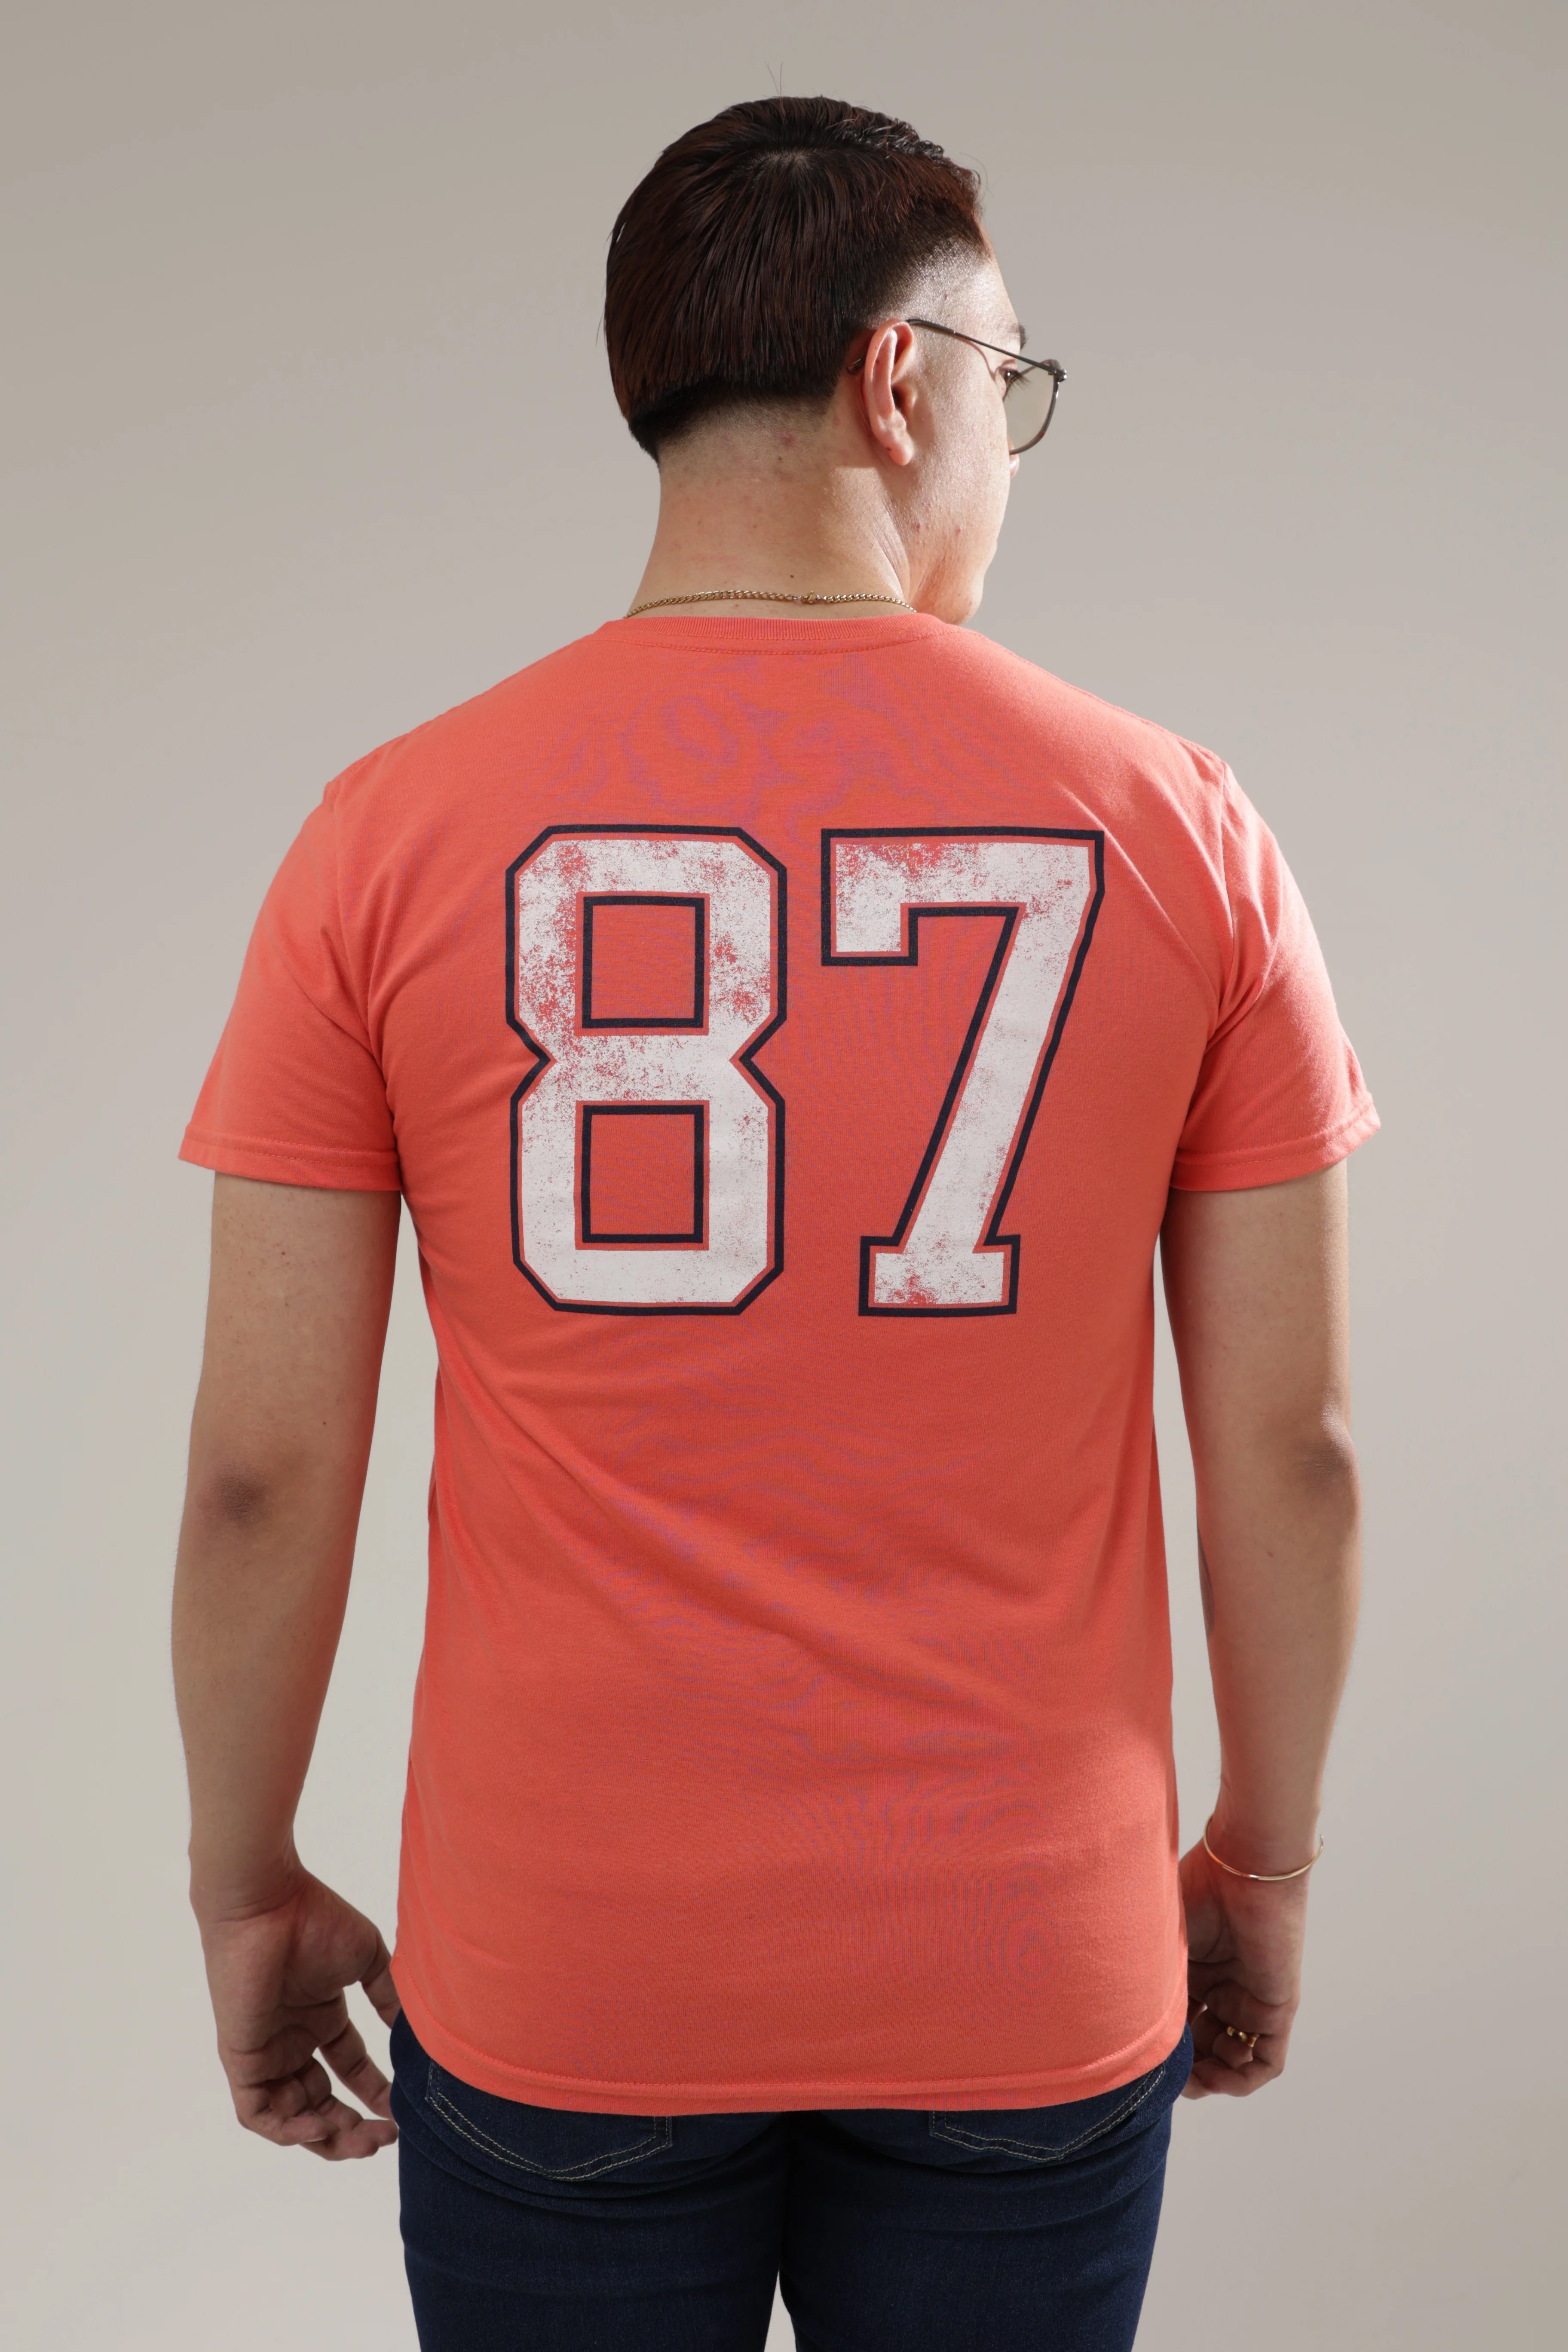 Camiseta Para Hombre Level 2 Graphic Tees Aero Level 2 Graphic Tees Sun Kissed Coral Sun Kissed Coral 5695